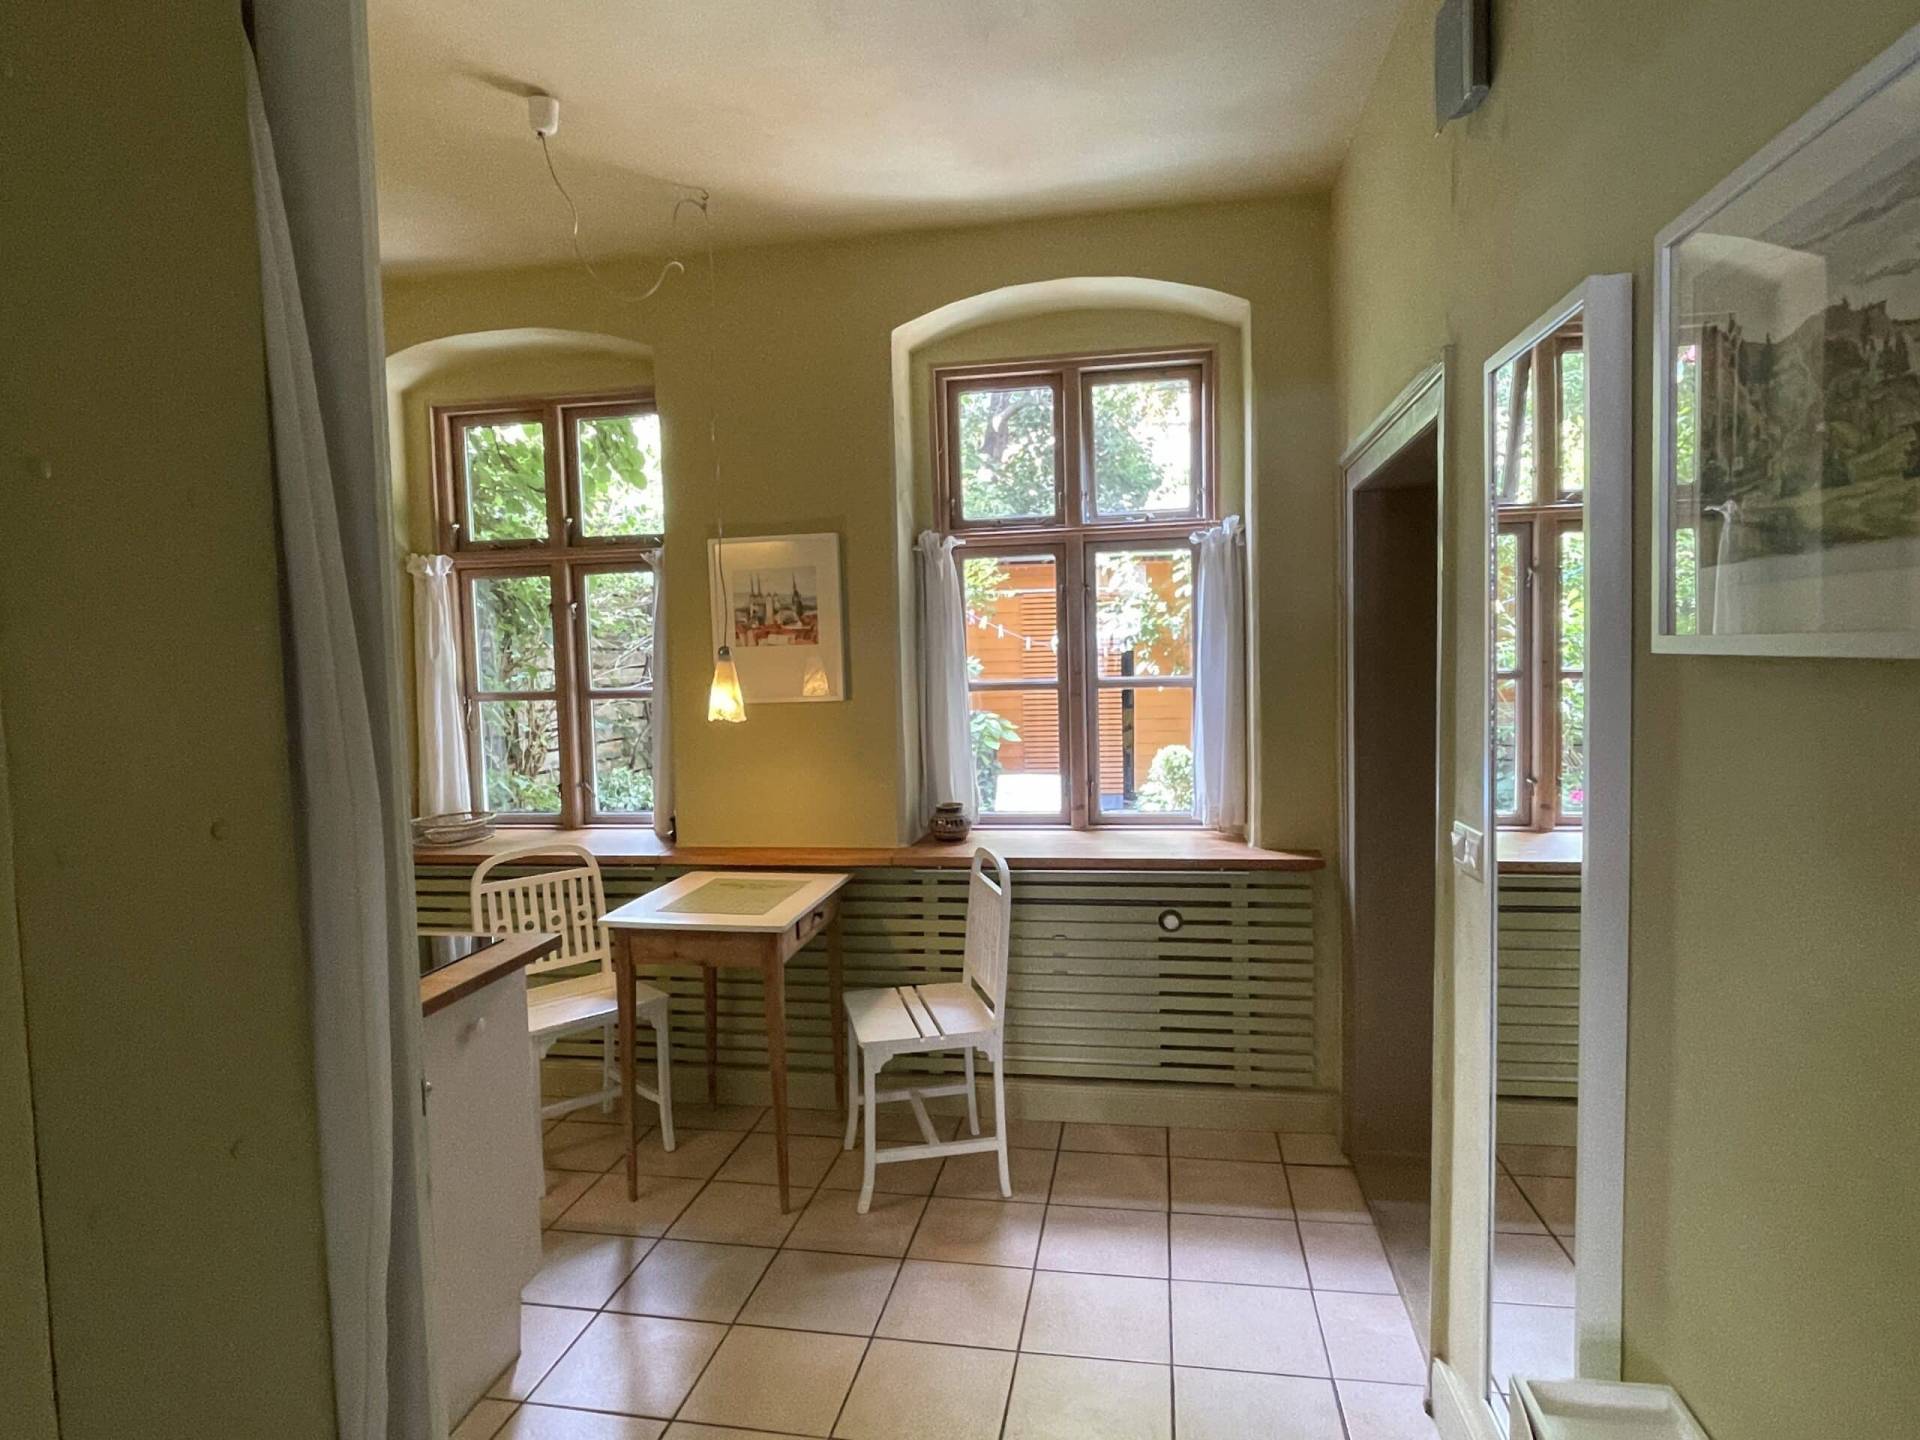 Ferienwohnung "Frau Pritzkow" - Blick in Küche vom Wohnzimmer aus gesehen